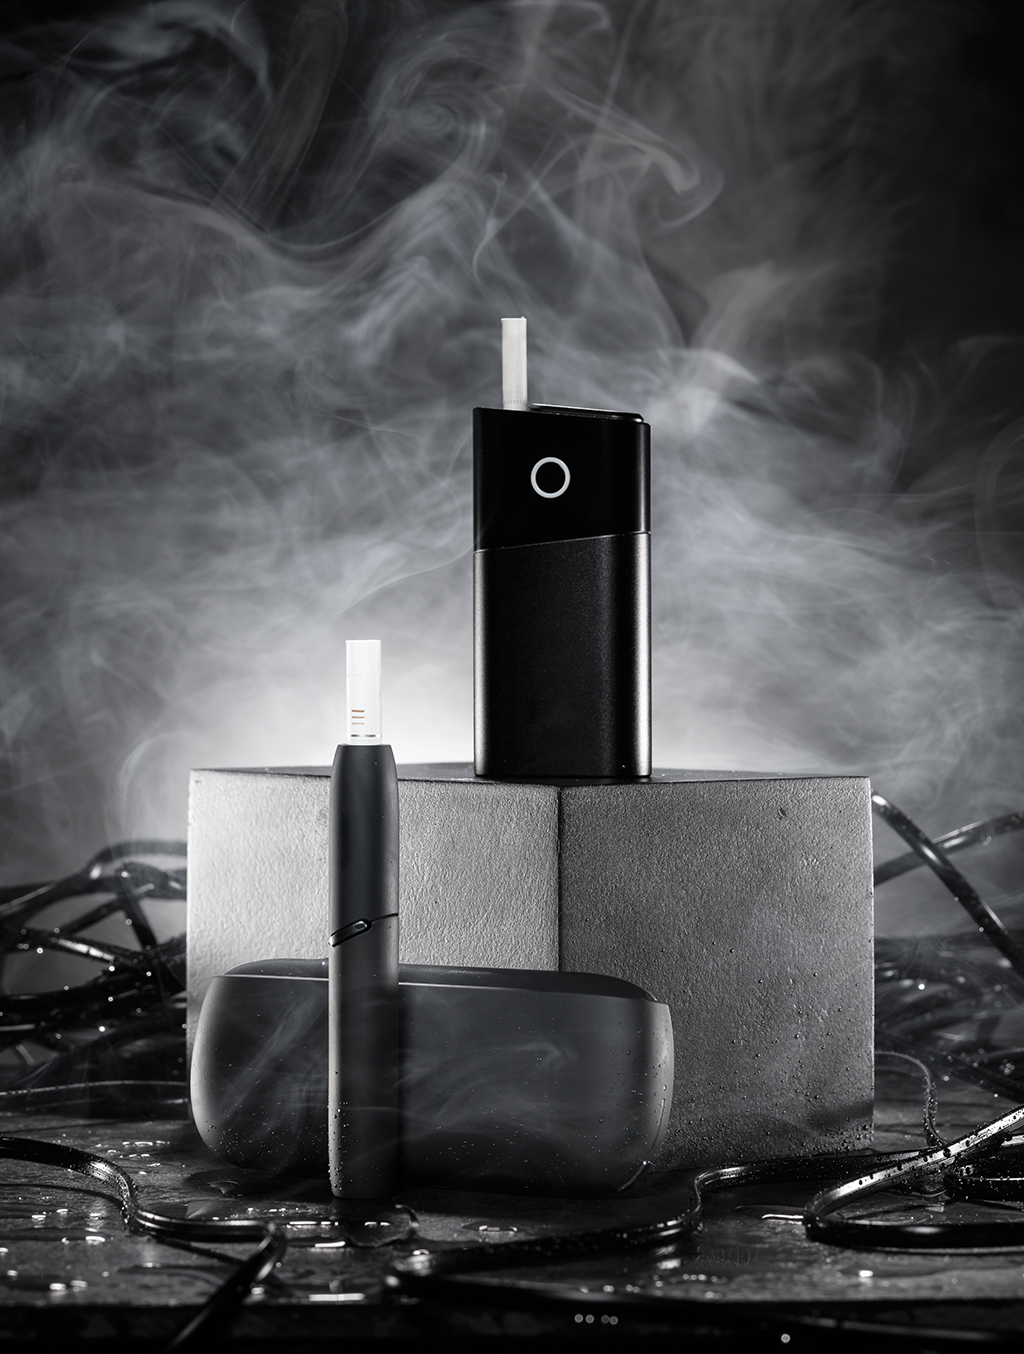 Esta é a classe dos híbridos: os cigarros eletrônicos que, em vez de vaporizar nicotina líquida, aquecem bastões de tabaco dentro destas cápsulas.